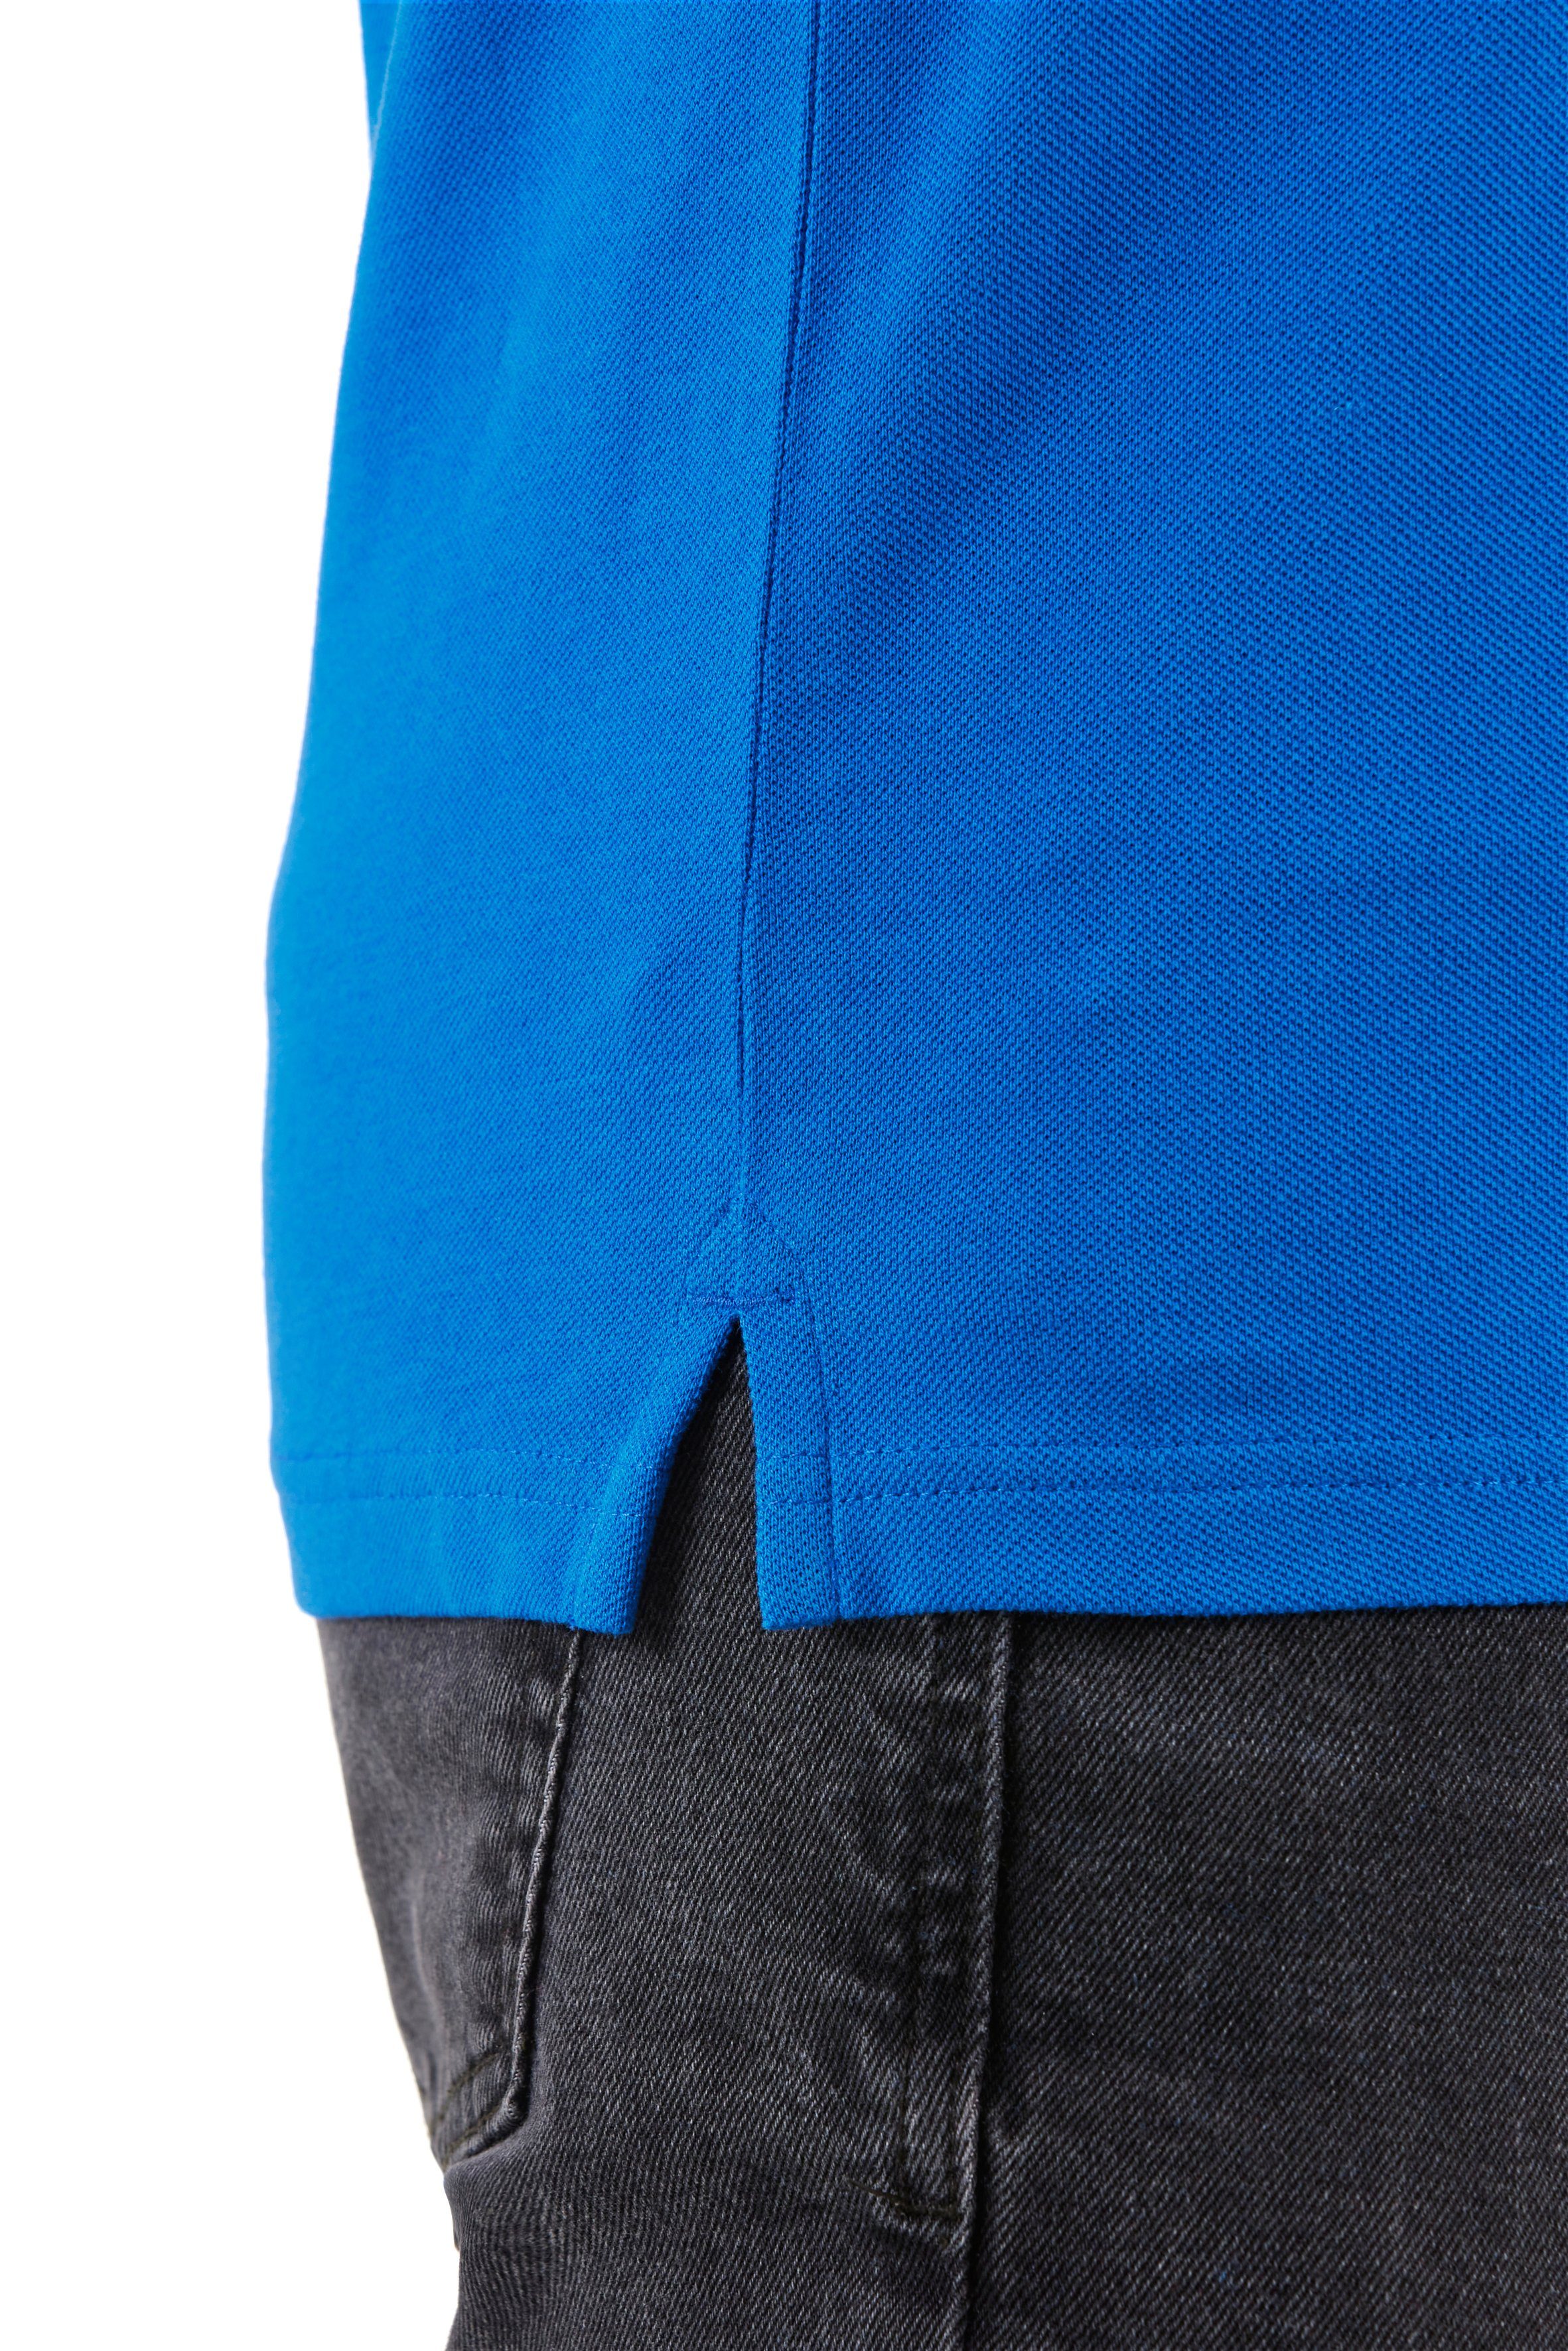 Northern Country Poloshirt zum Lapis Arbeiten, Arm mit Stifthalter Tragegefühl, angenehmes am Blue